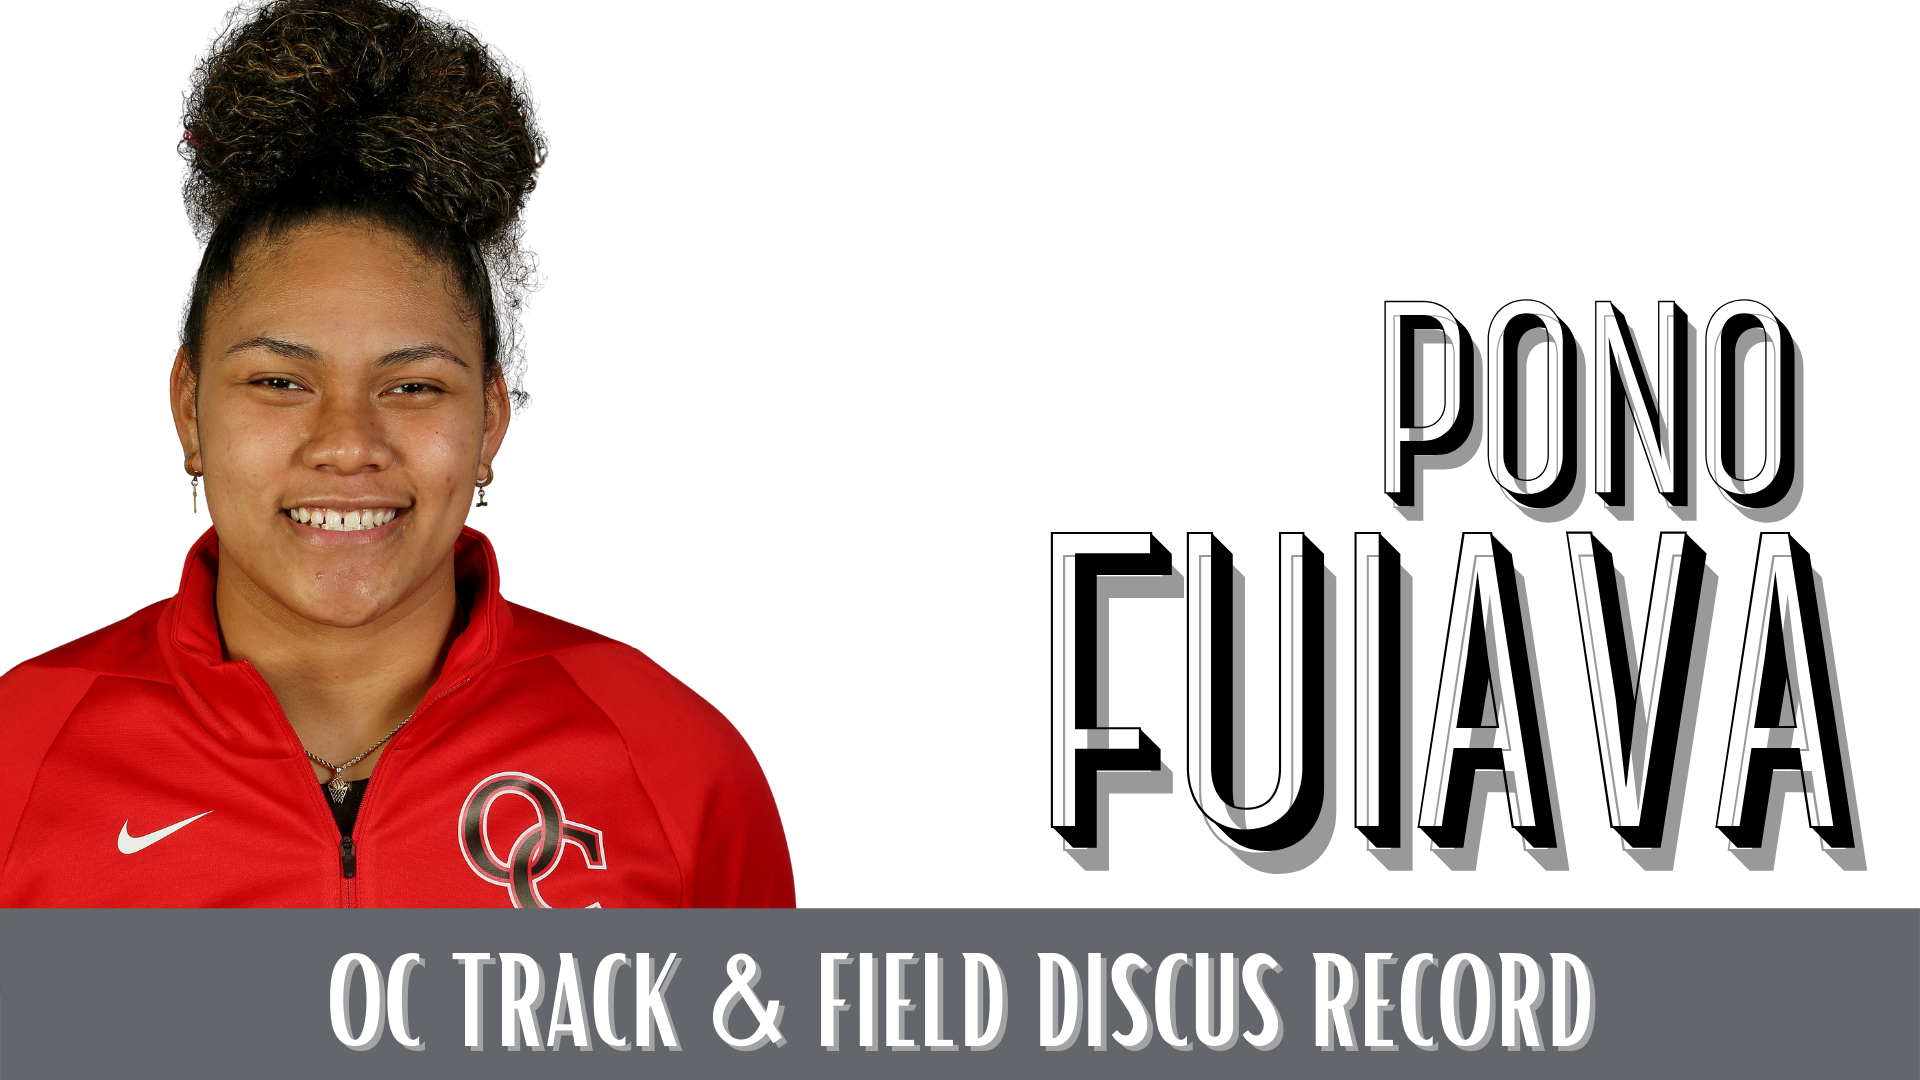 Pono Fuiava. OC Track & Field Discus Record. With headshot of Pono Fuiava